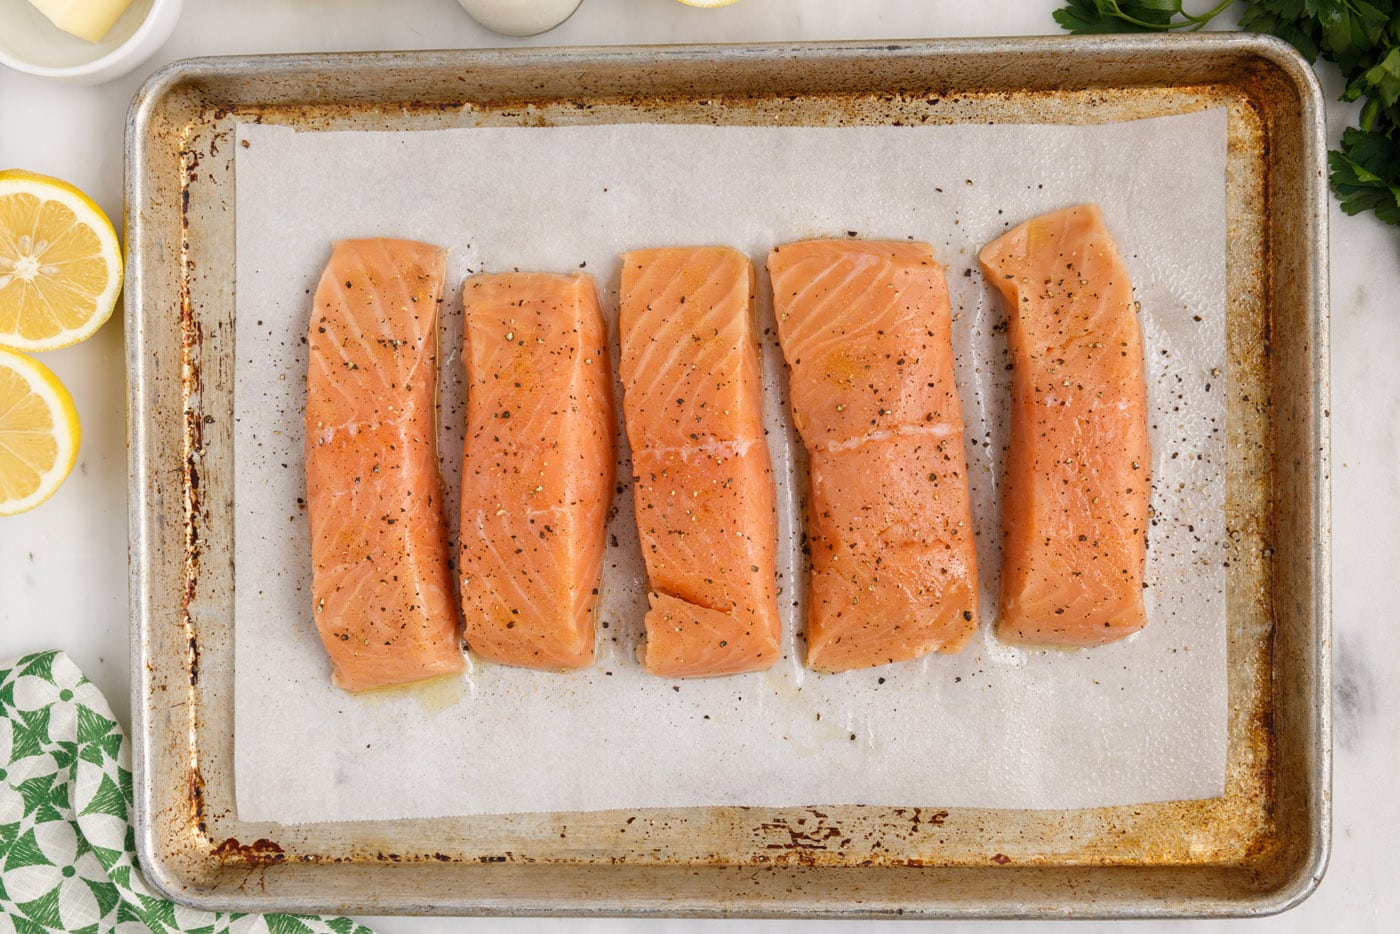 seasoned salmon filets on baking sheet